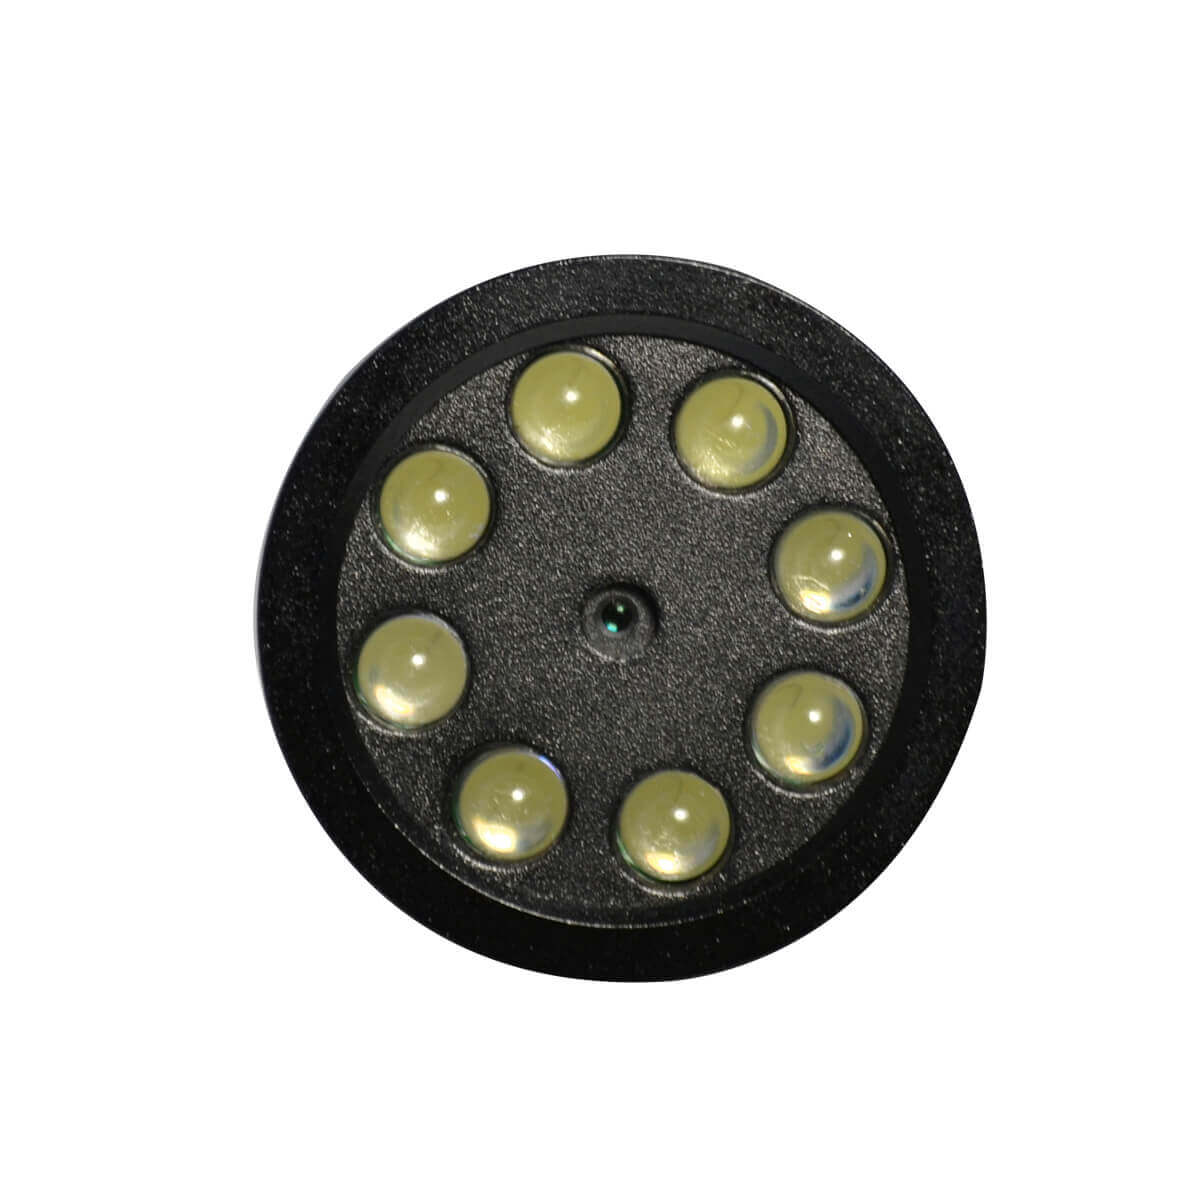 Linterna con camara oculta, 1/4 CMOS, leds 2.8mm contiene microfono.